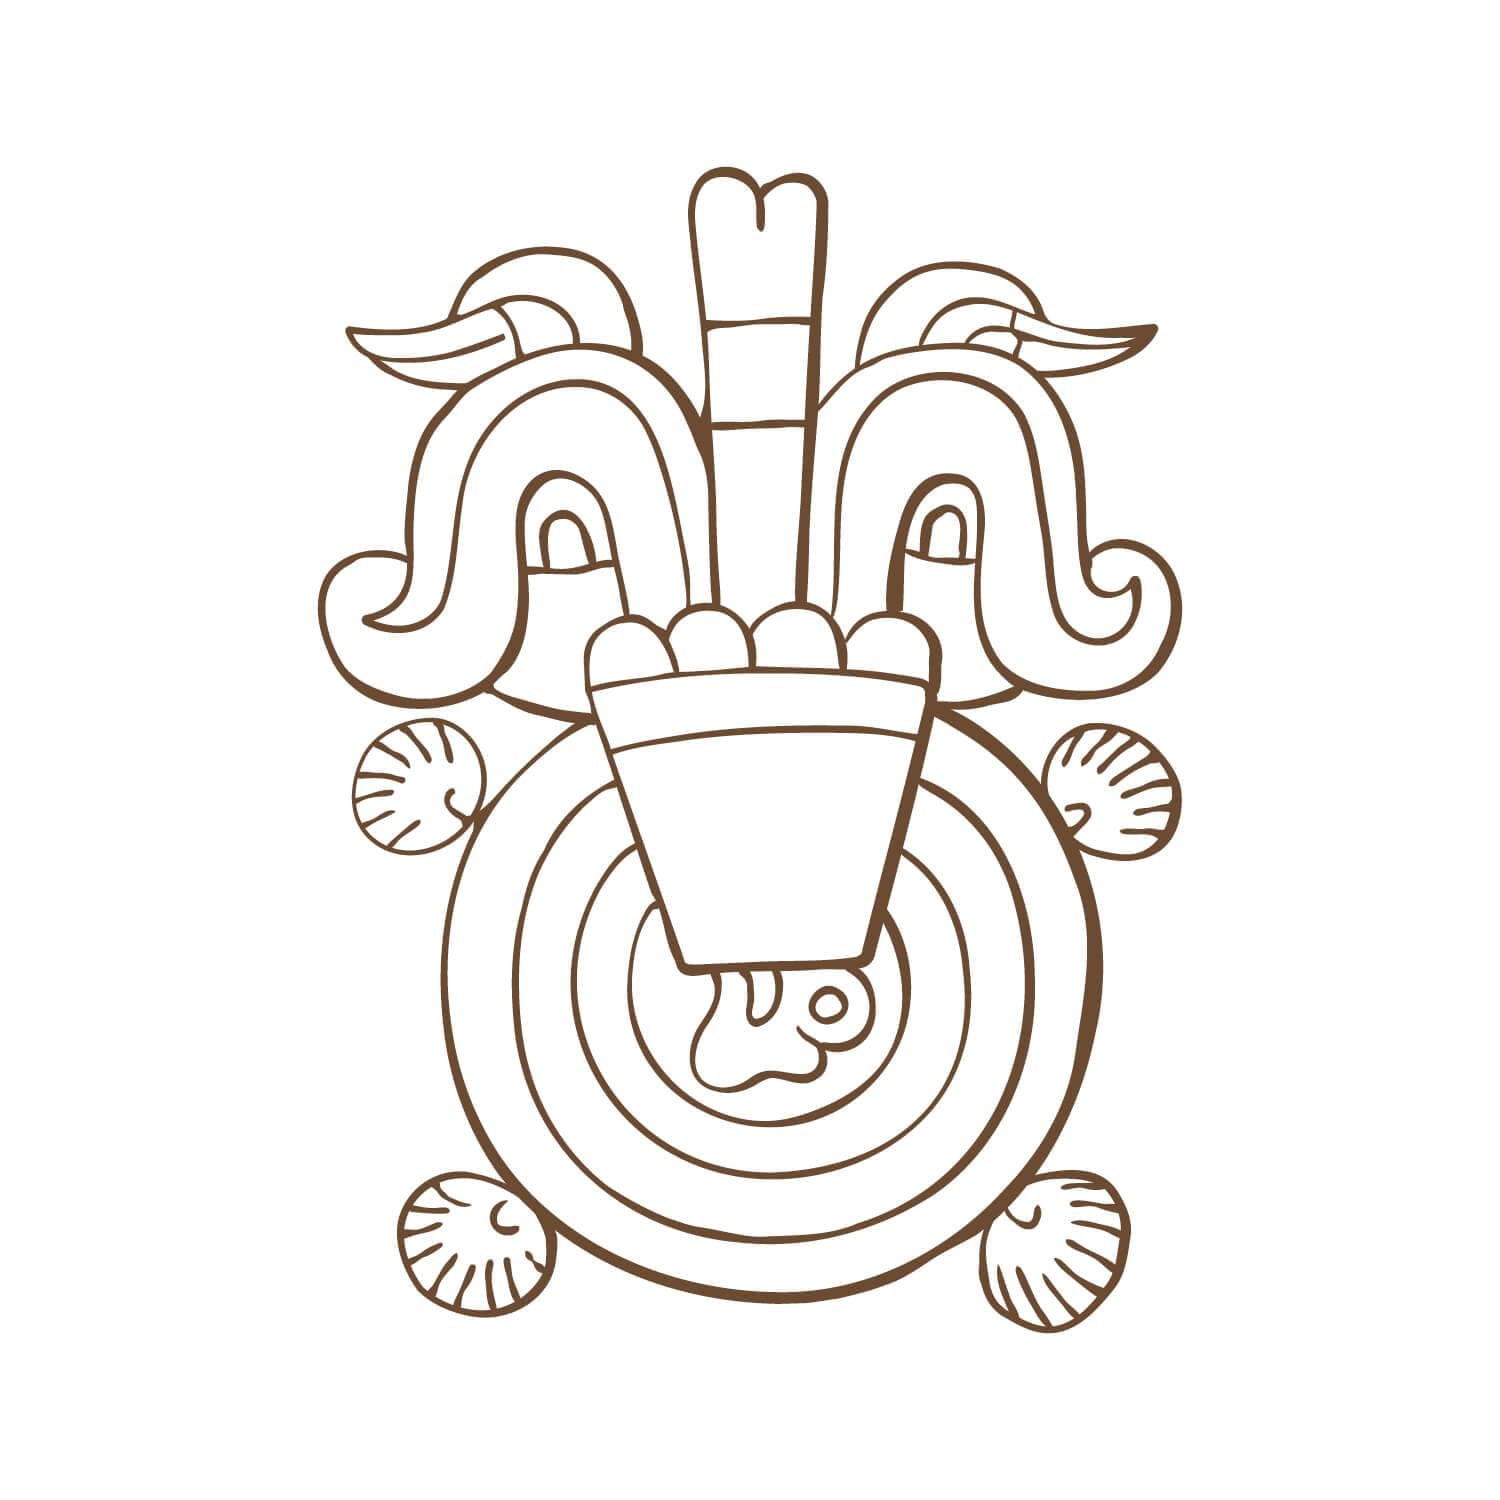 Le hiéroglyphe "Fiery Willpower" par Ichetkar est un symbole aztèque empreint de la culture mexicaine, créé pour le spa Esperanza.